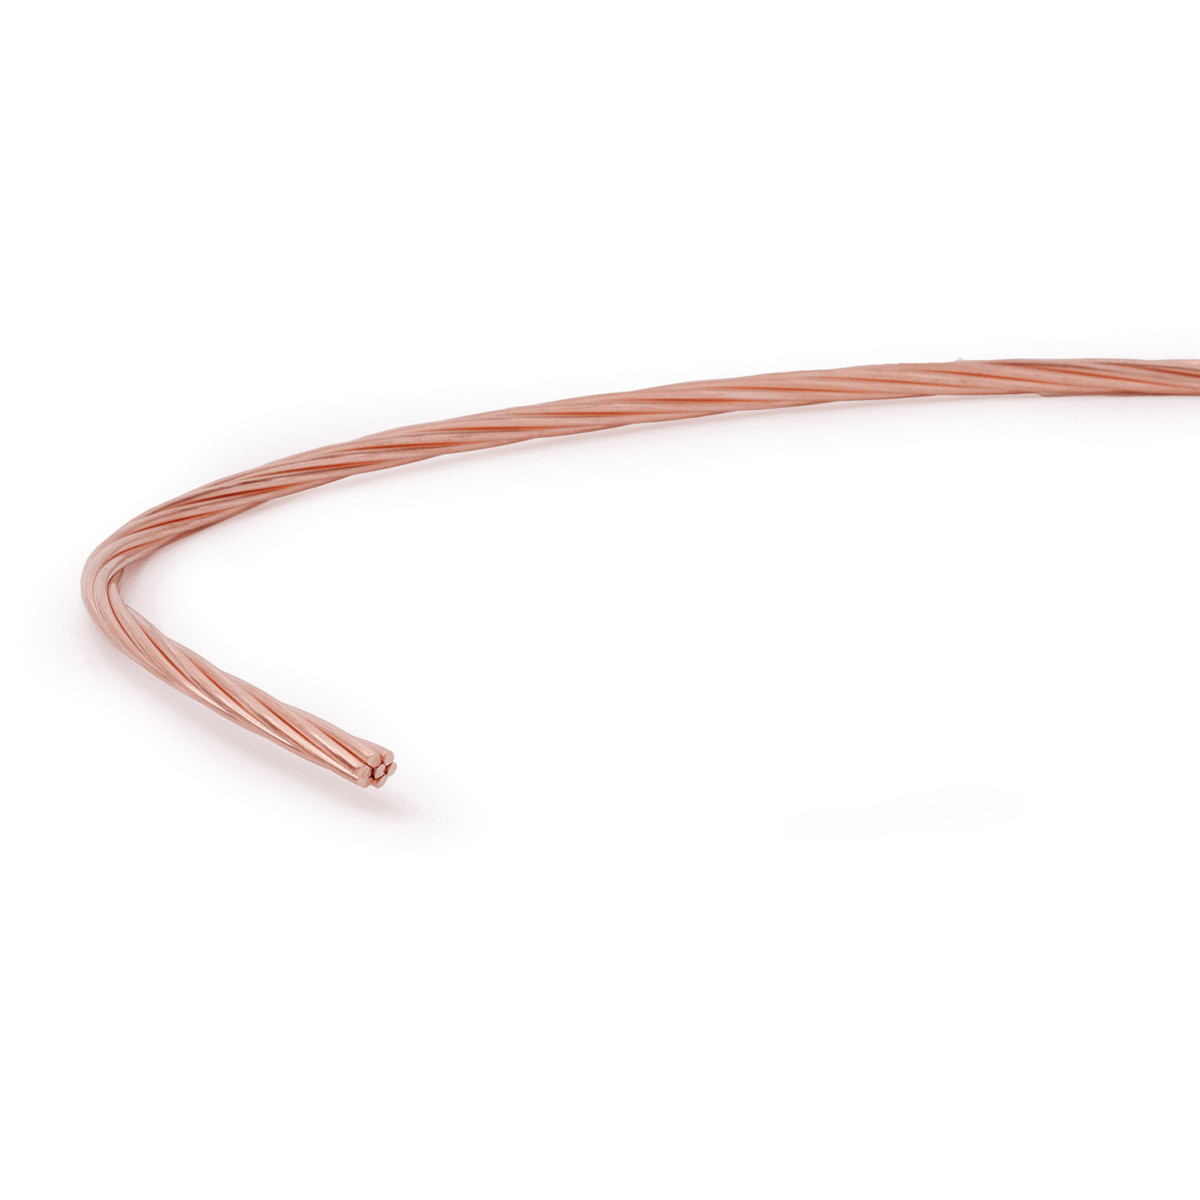 Câble cuivre nu 25 mm² - qualité professionnelle - Champion Direct